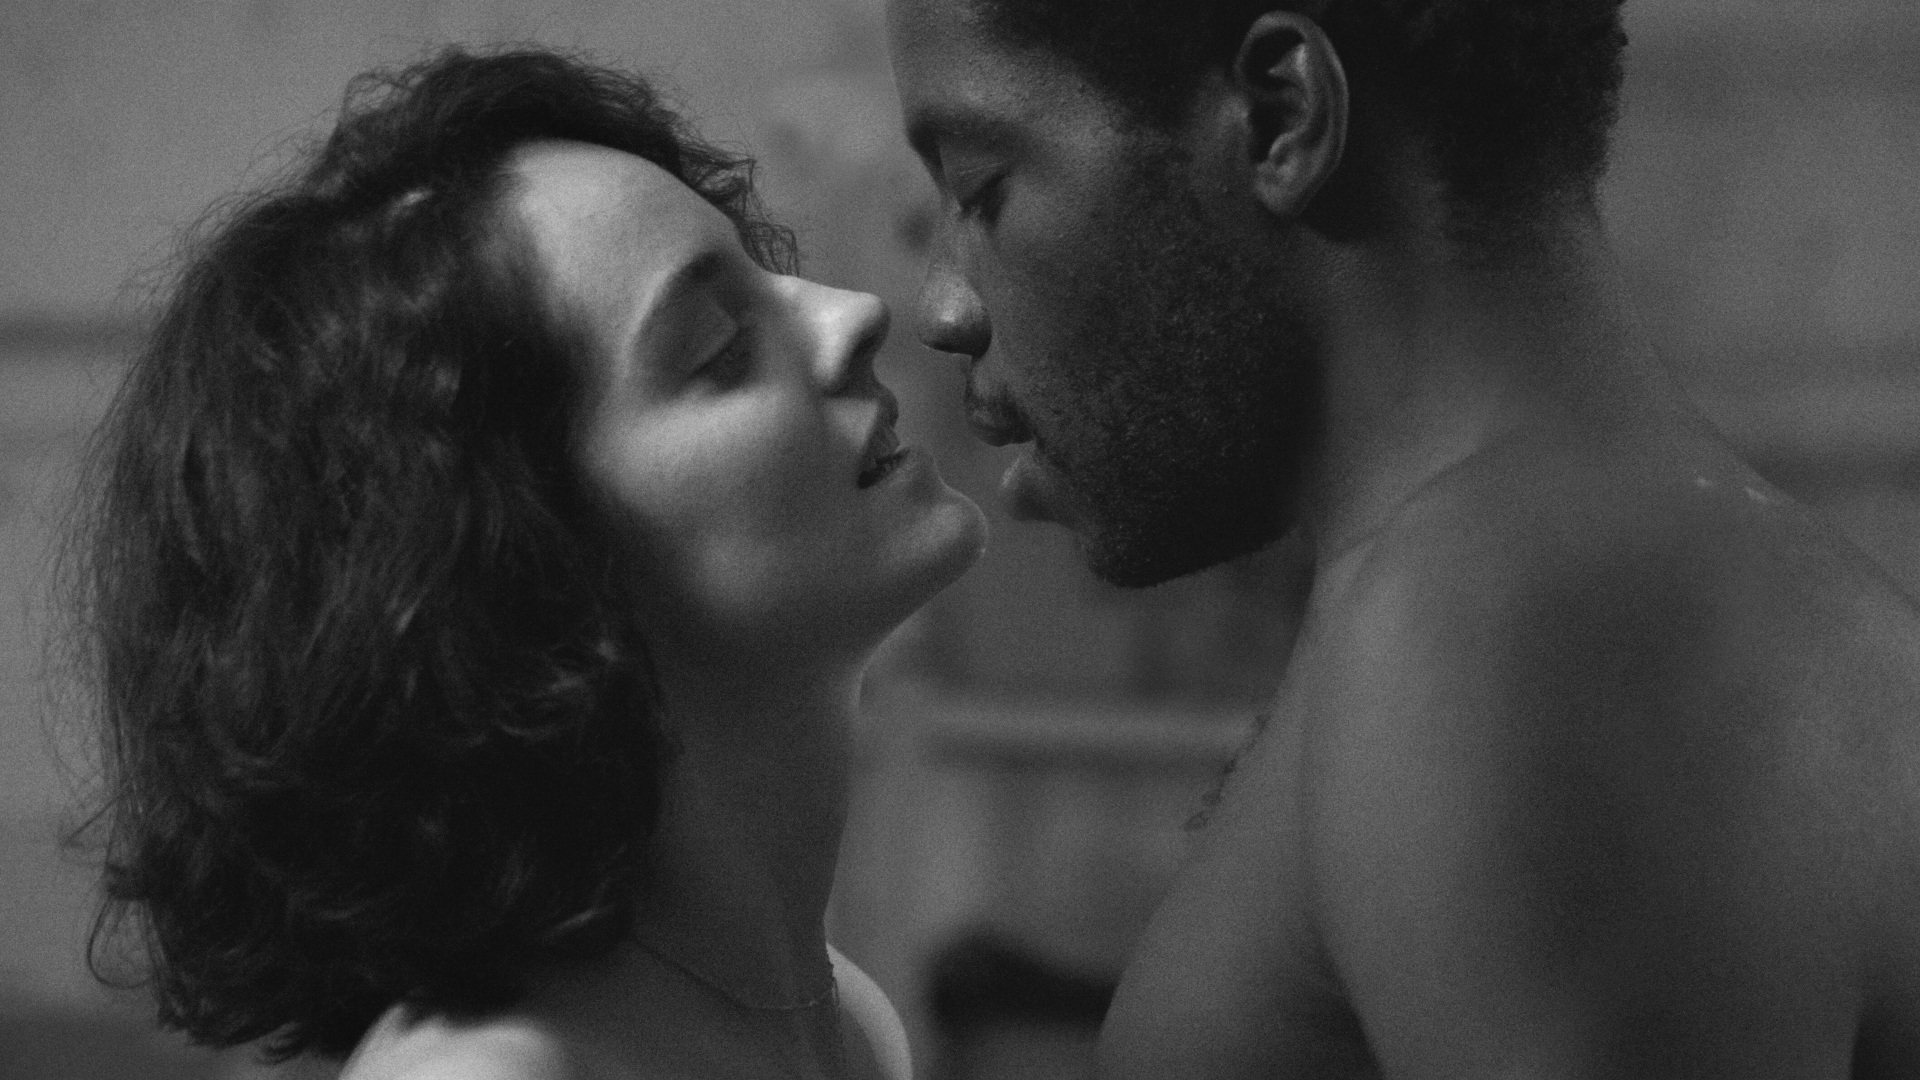 kadr z czarno-białego filmu Paryż 13 dzielnica w reżyserii Jacquesa Audiarda przedstawiający kobietę i mężczyznę przed pocałunkiem